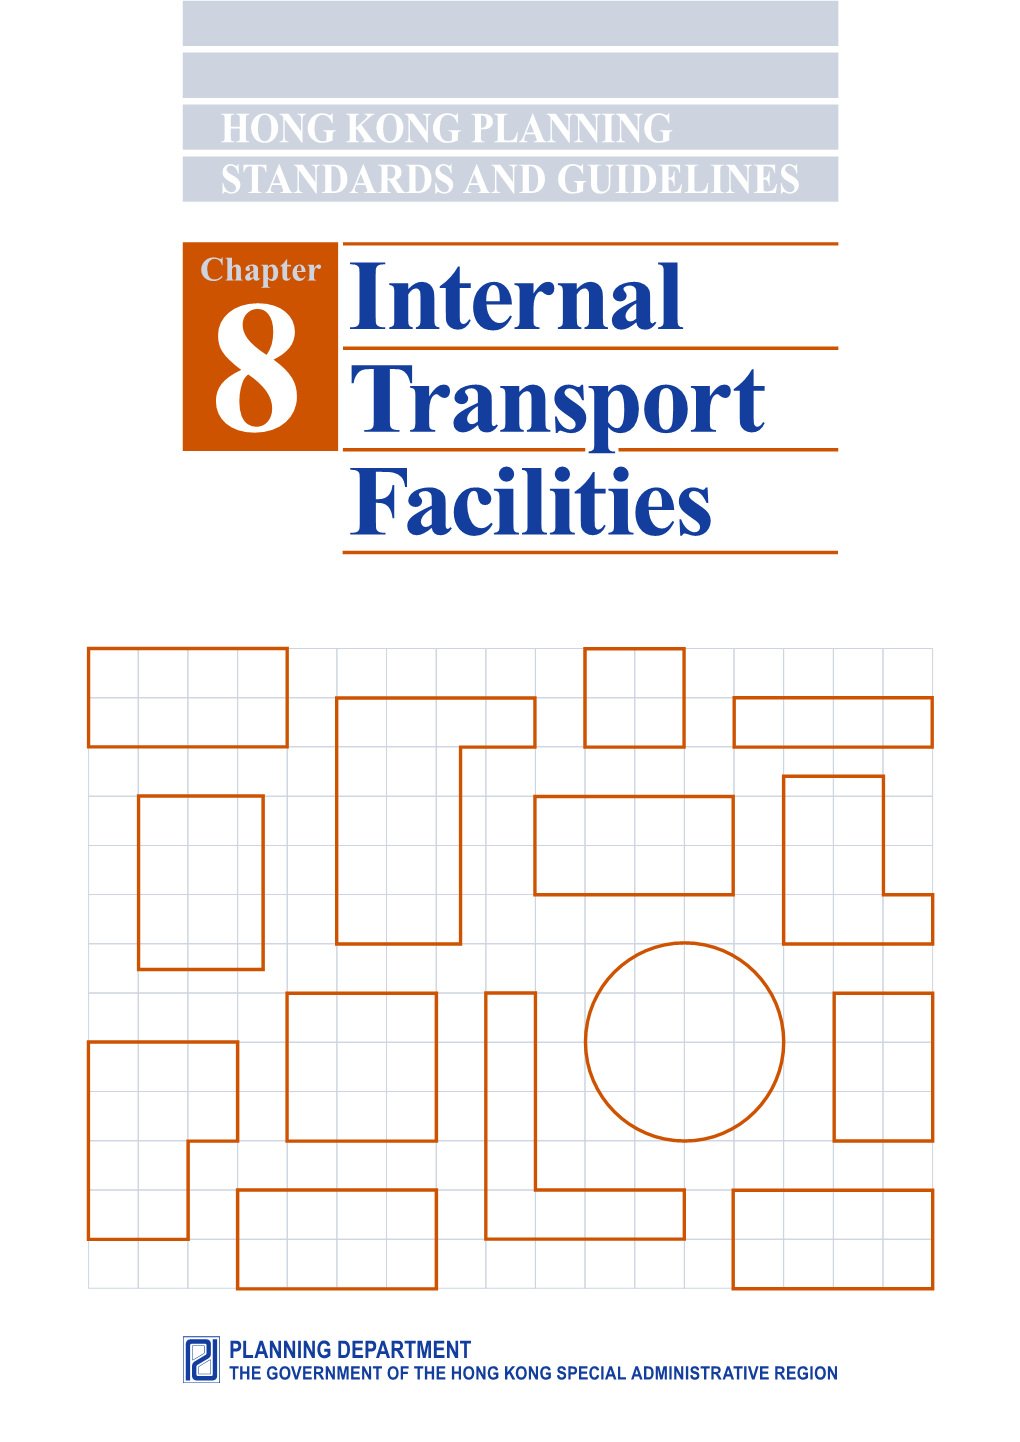 Internal Transport Facilities